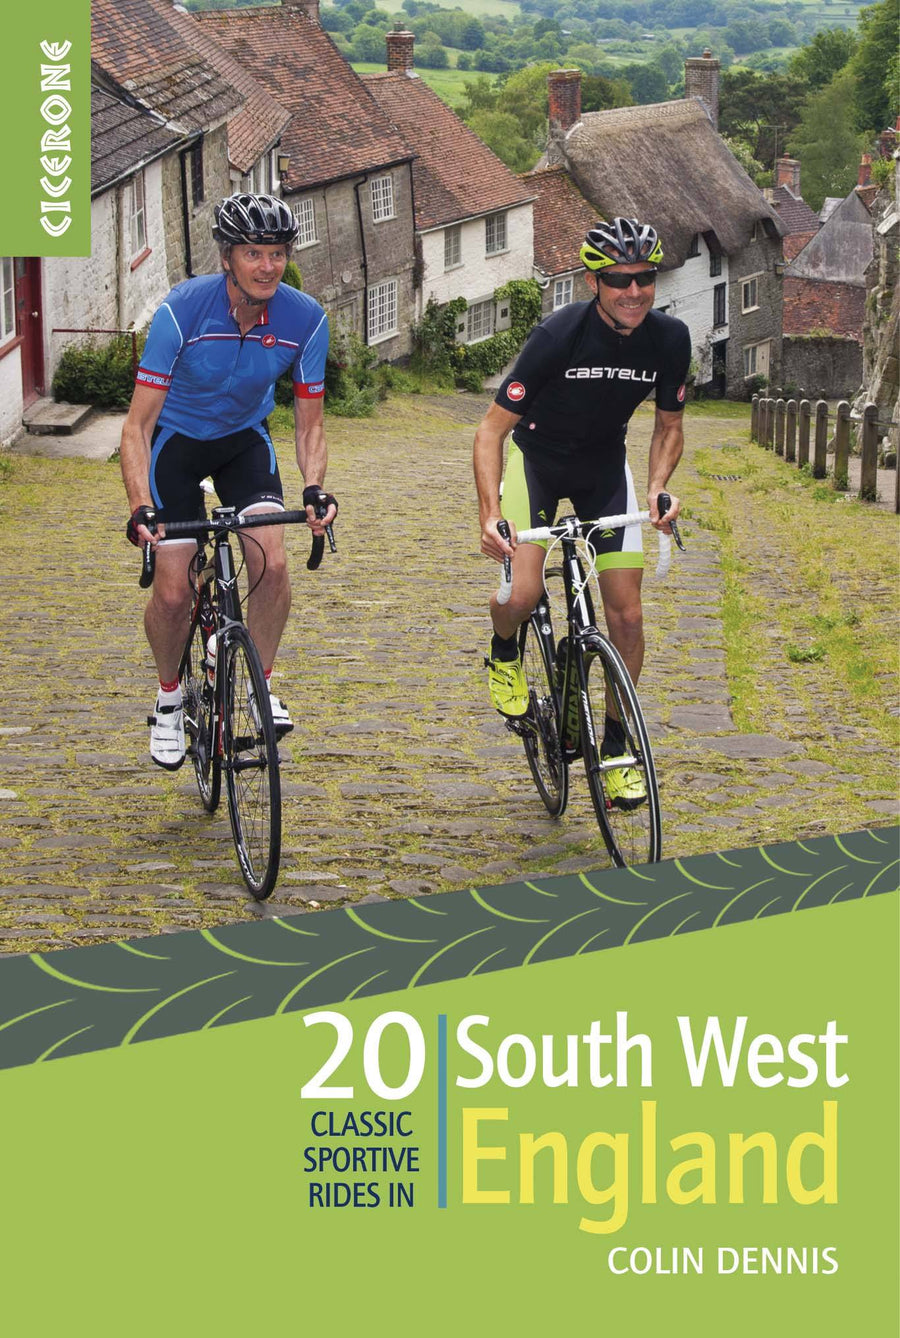 Guide vélo (en anglais) - South West England, 20 classic sportive rides | Cicerone guide vélo Cicerone 